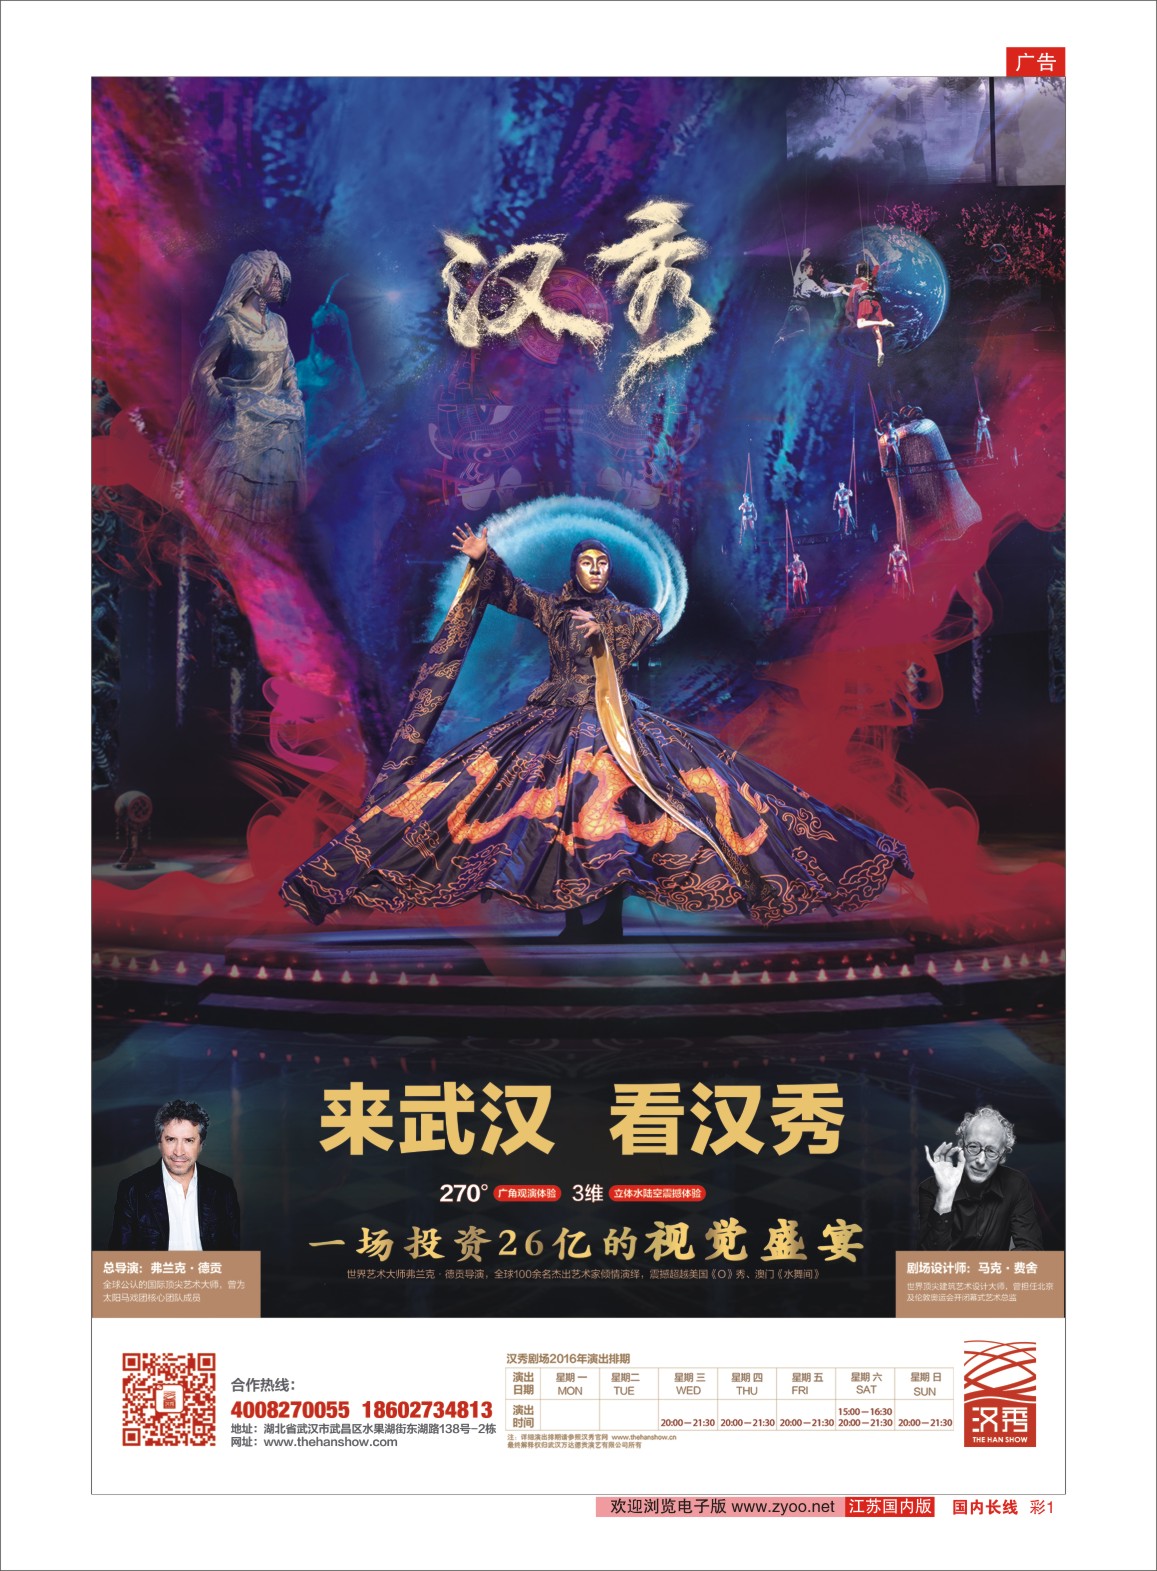 彩01 【武汉汉秀剧场】一生必看的世界级舞台秀  景区专版